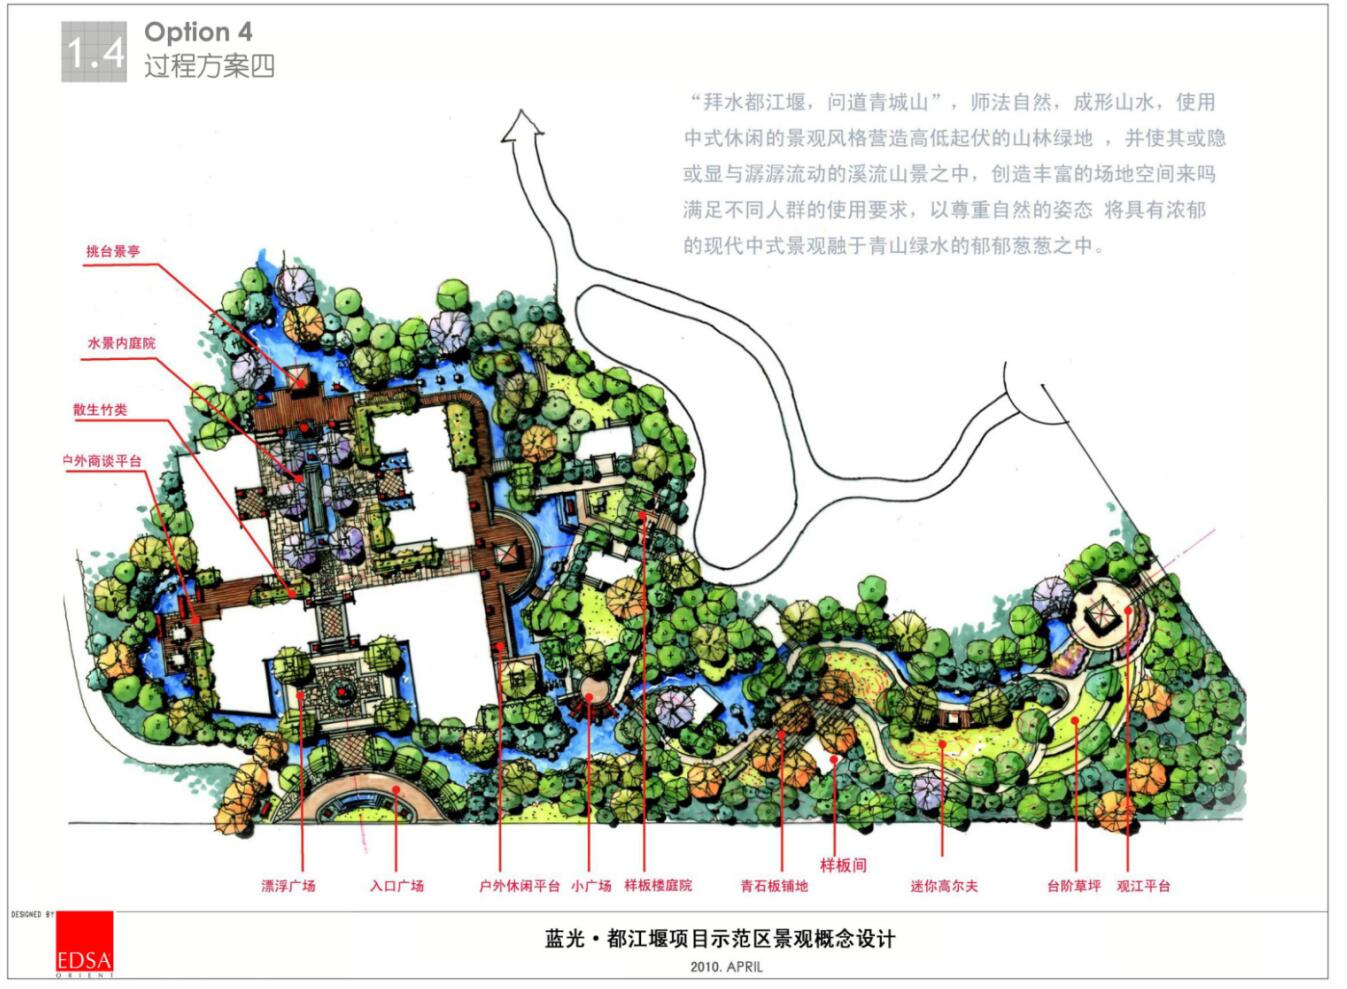 蓝光-都江堰示范区景观概念设计——EDSA-1